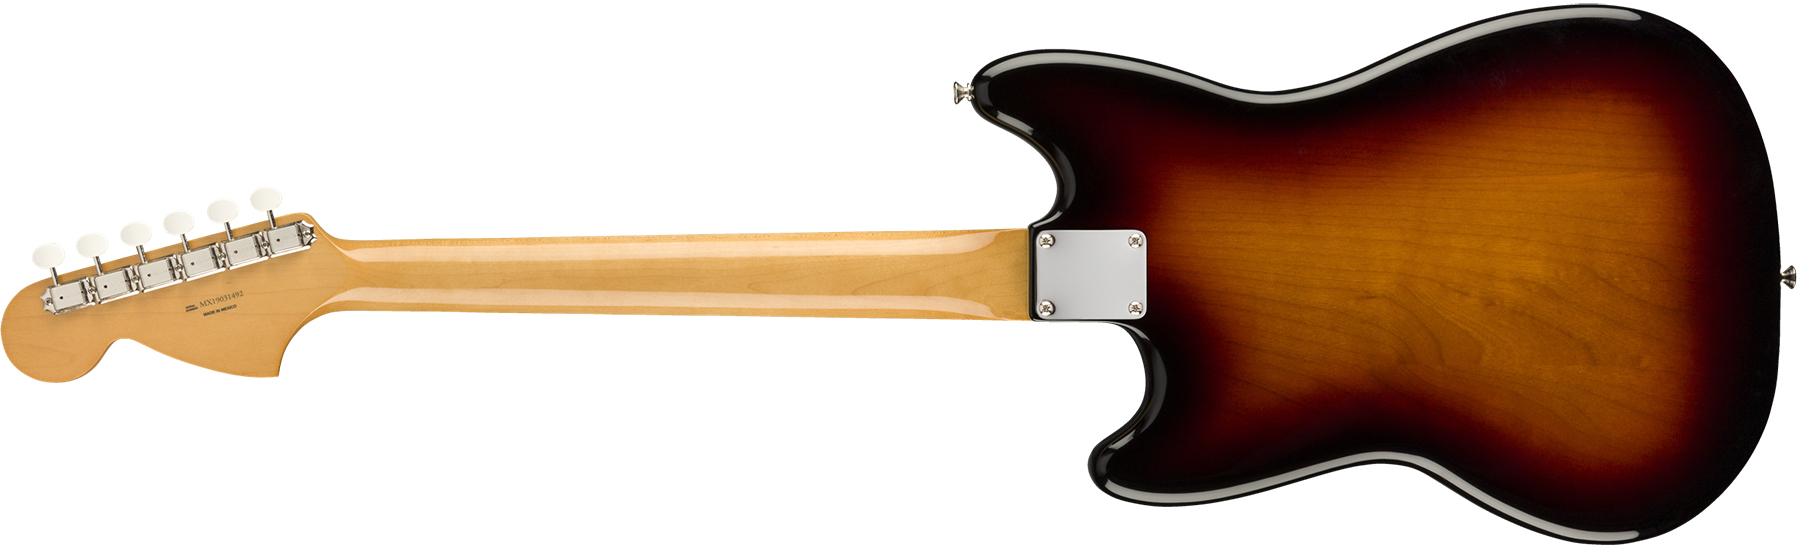 Fender Mustang 60s Vintera Vintage Mex Pf - 3-color Sunburst - Retro-rock elektrische gitaar - Variation 1